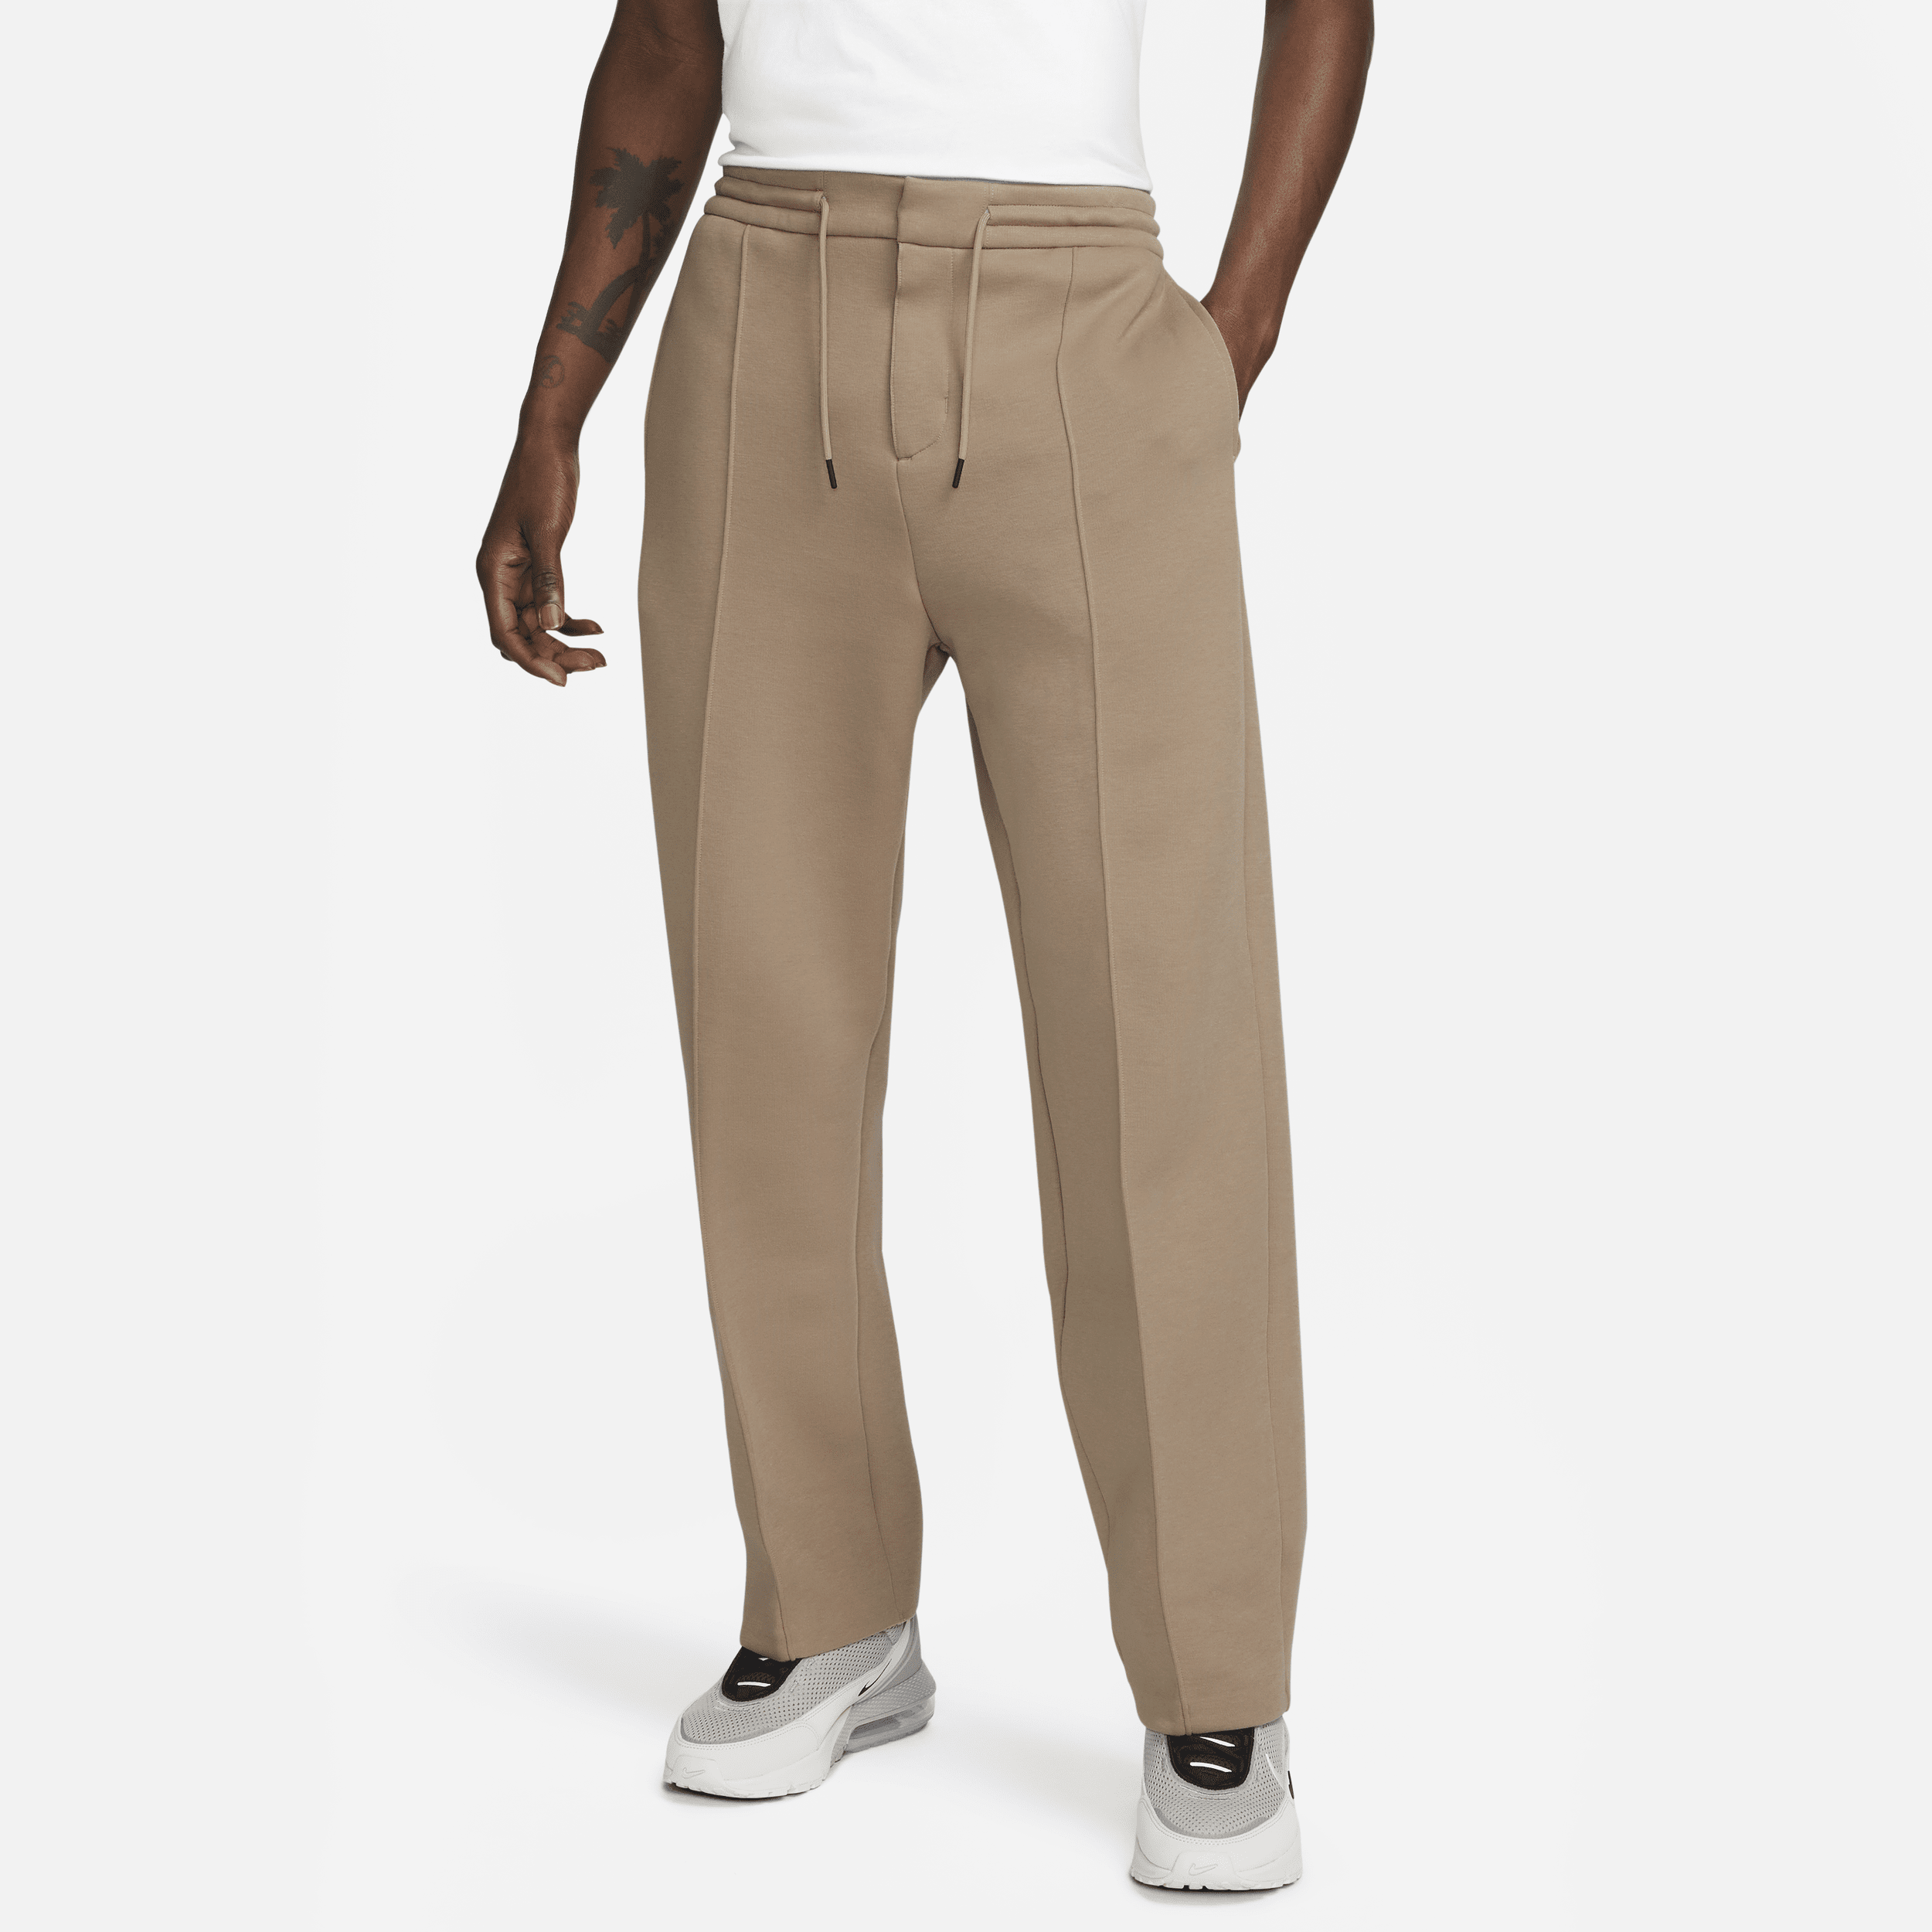 Nike Sportswear Tech Fleece Reimagined joggingbroek met open zoom en ruimvallende pasvorm voor heren - Bruin